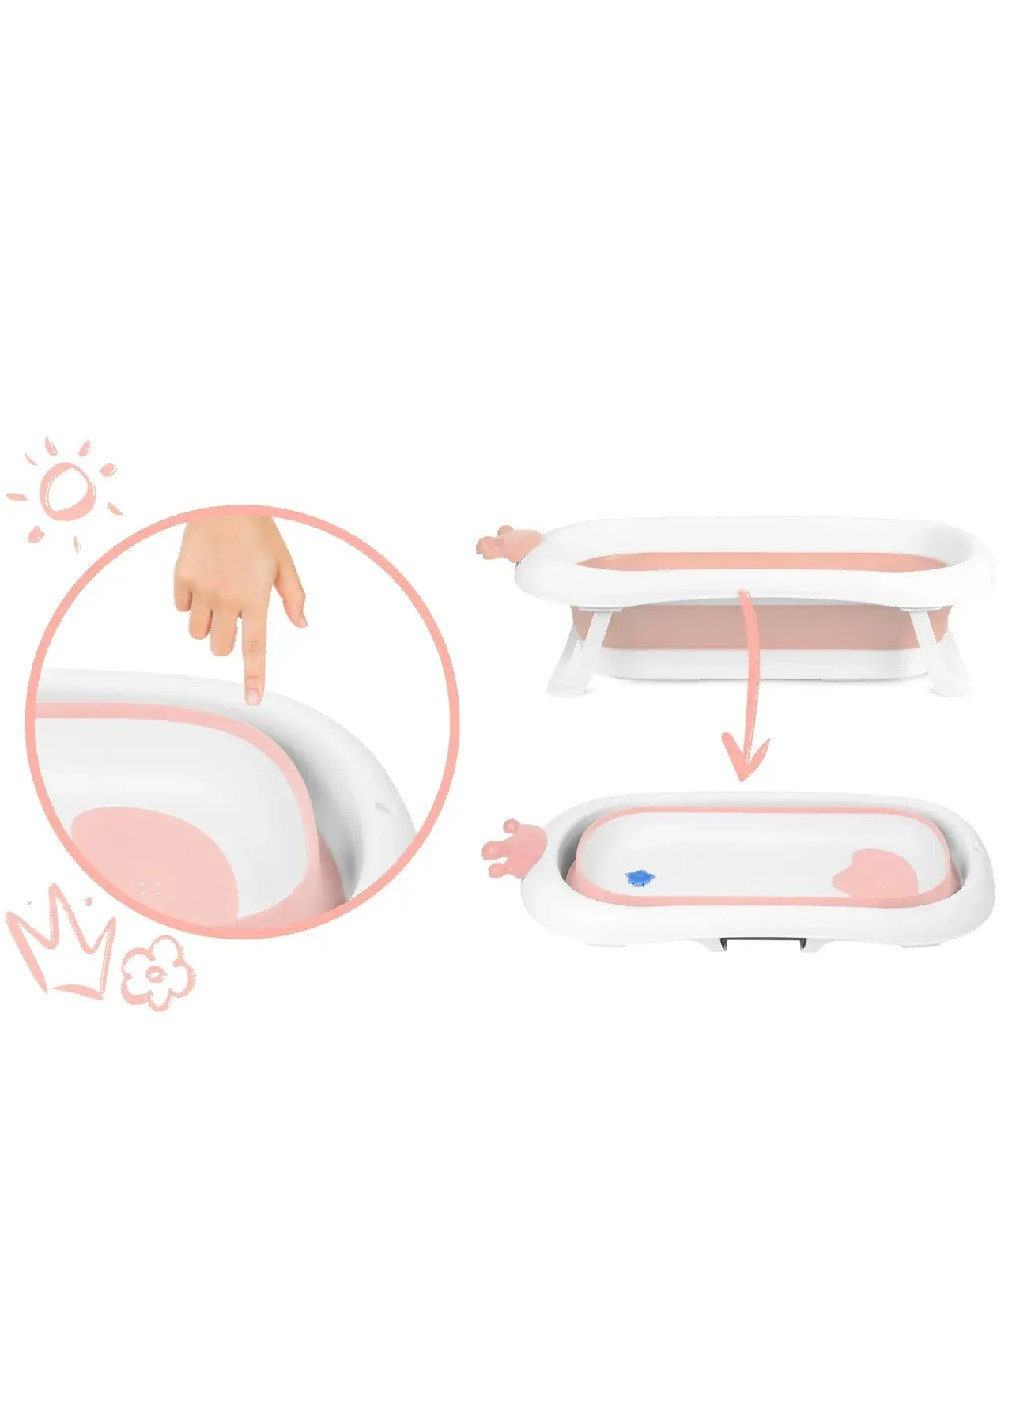 Складна компактна портативна ванна з подушкою нековзним оздобленням для дітей малюків (475162-Prob) Біло-рожева Unbranded (262596927)